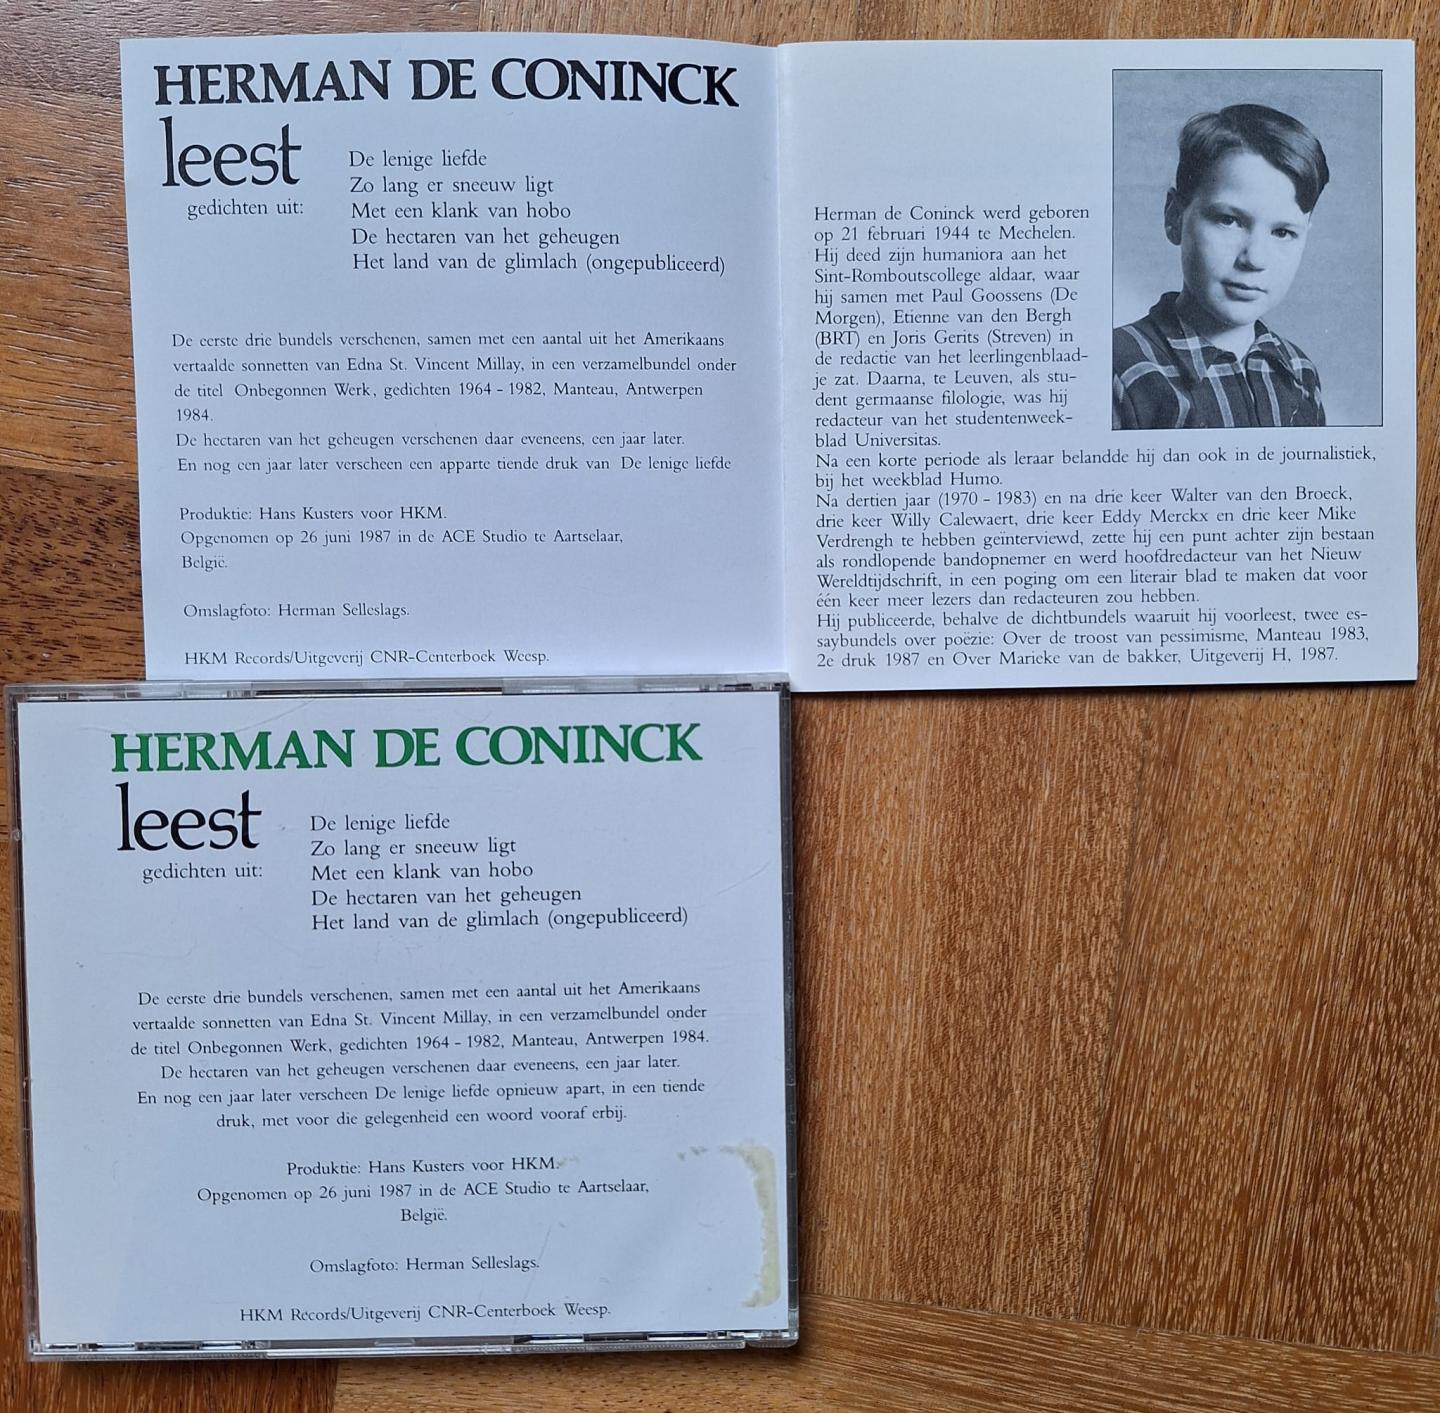 Coninck, Herman de - Het tasten van wind / Herman de Coninck leest